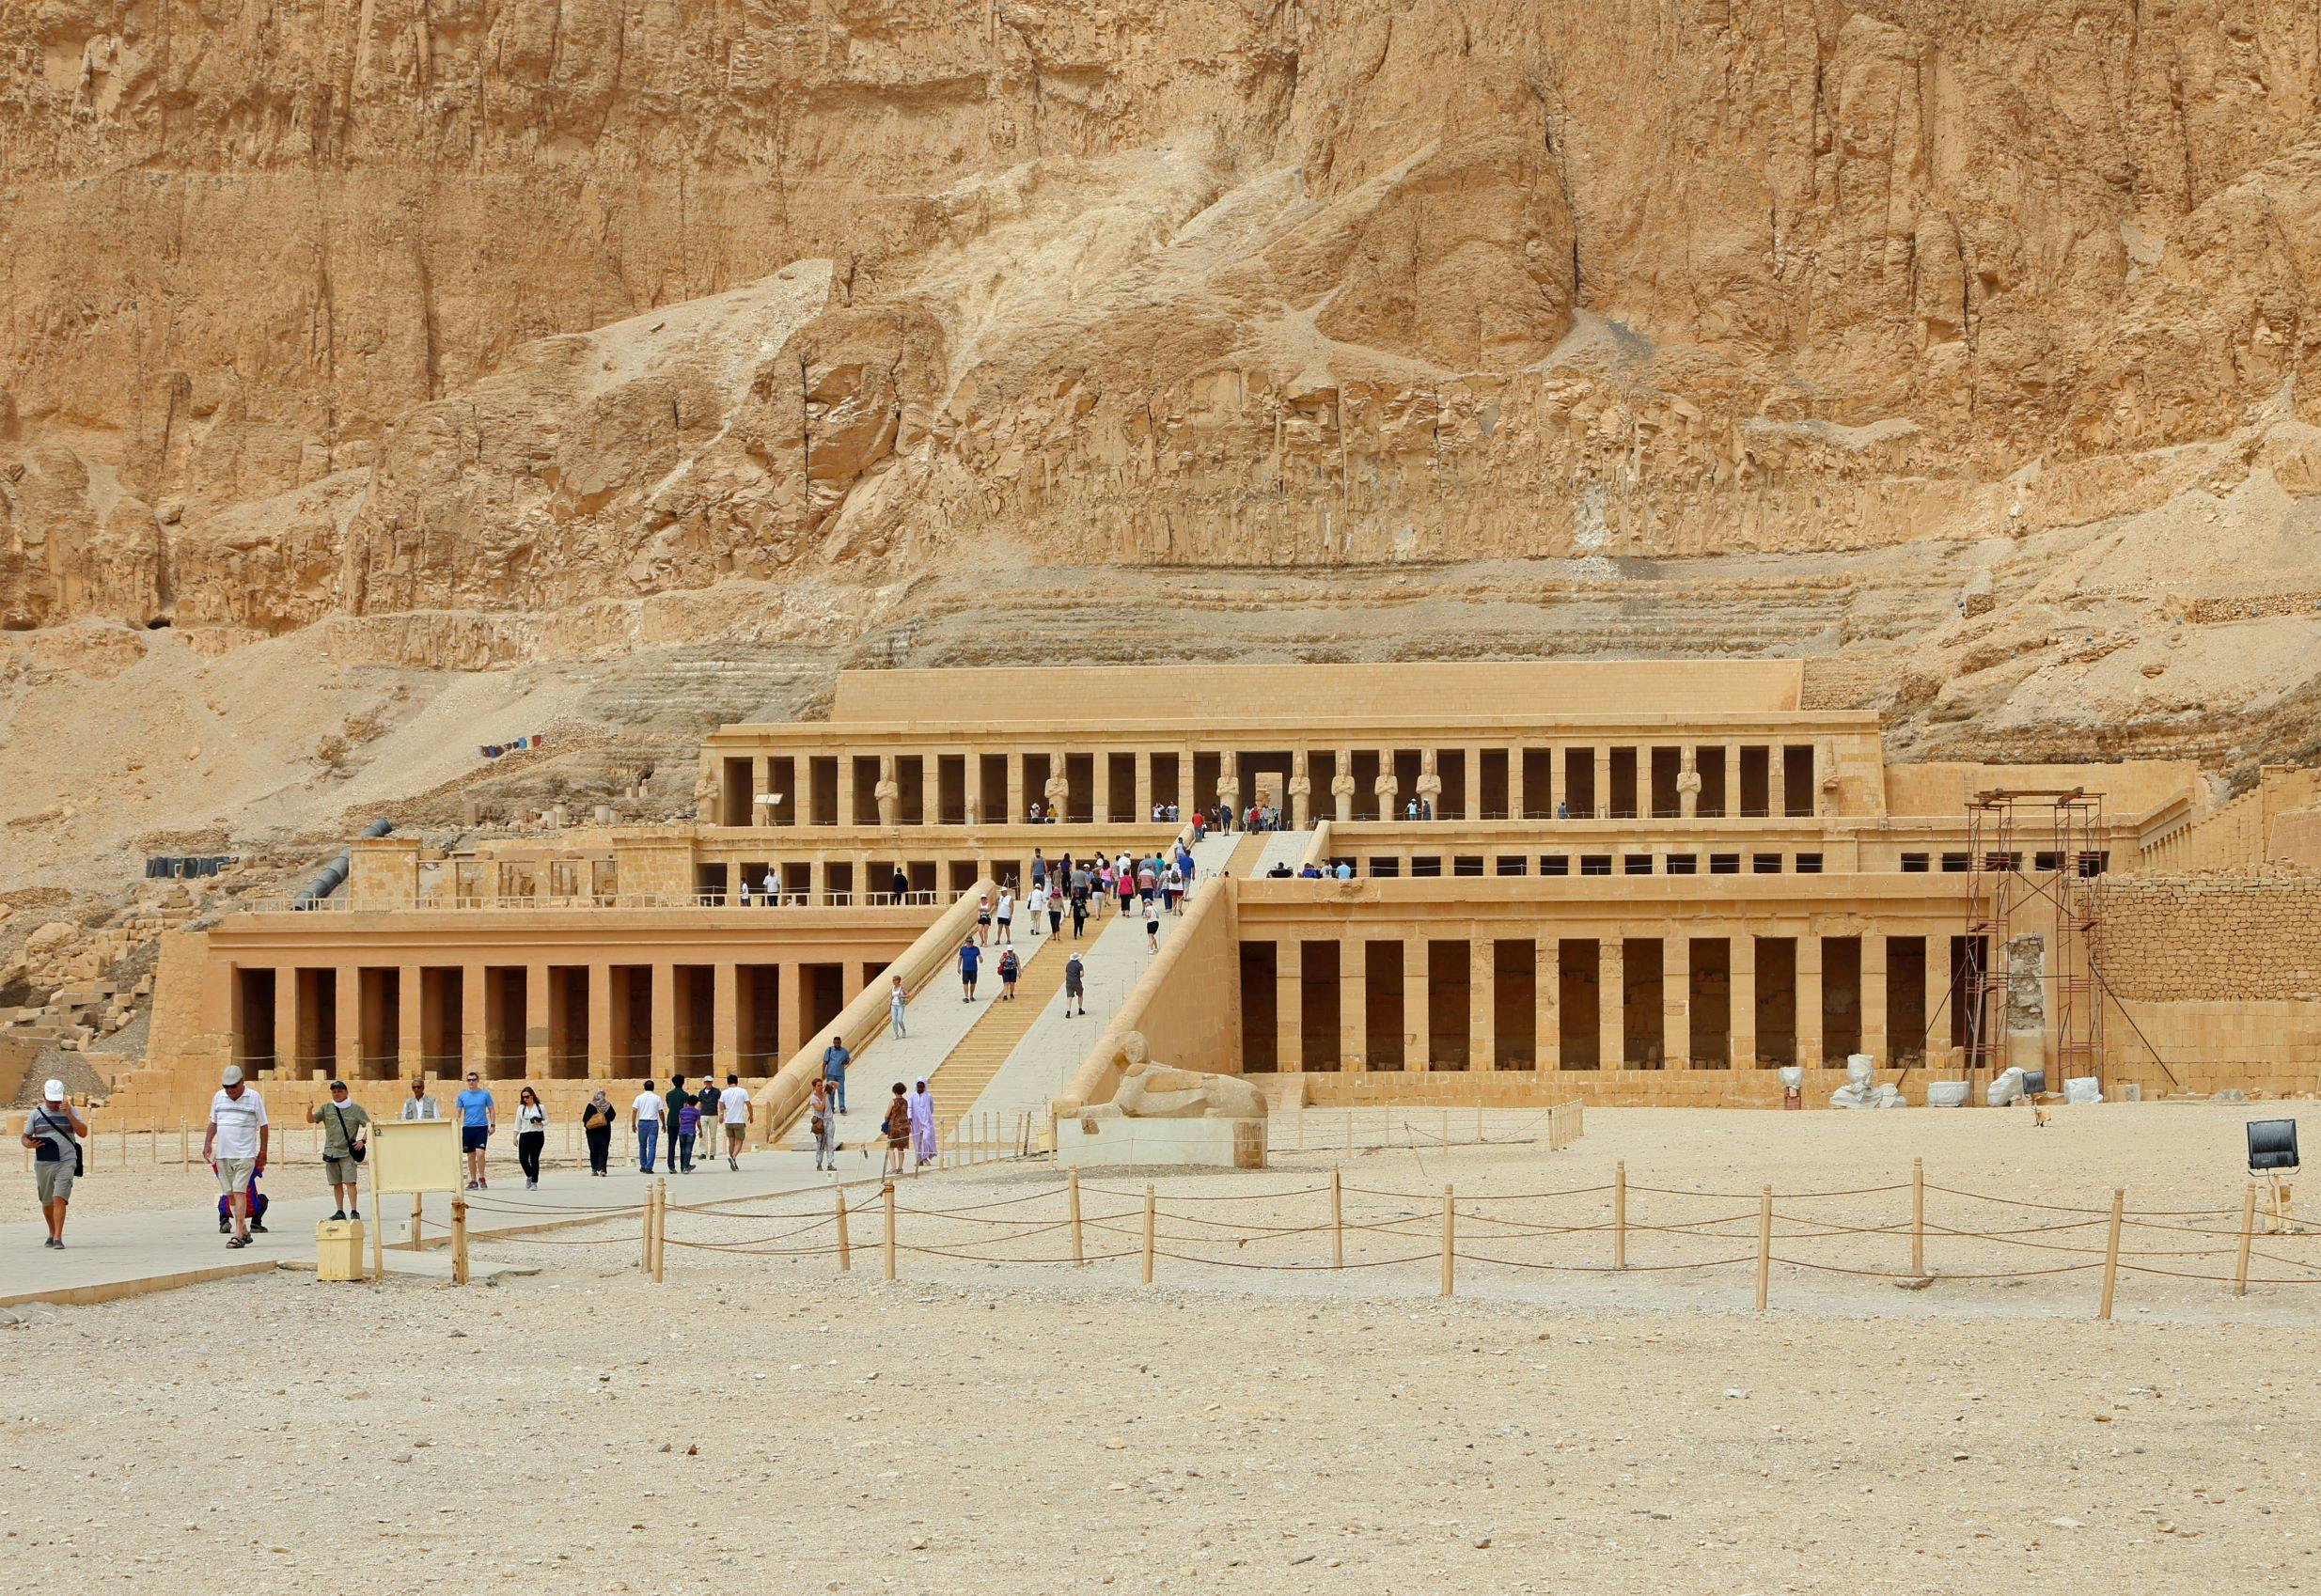 Luxor-Tagesausflug ab Sharm El Sheikh inklusive Flügen